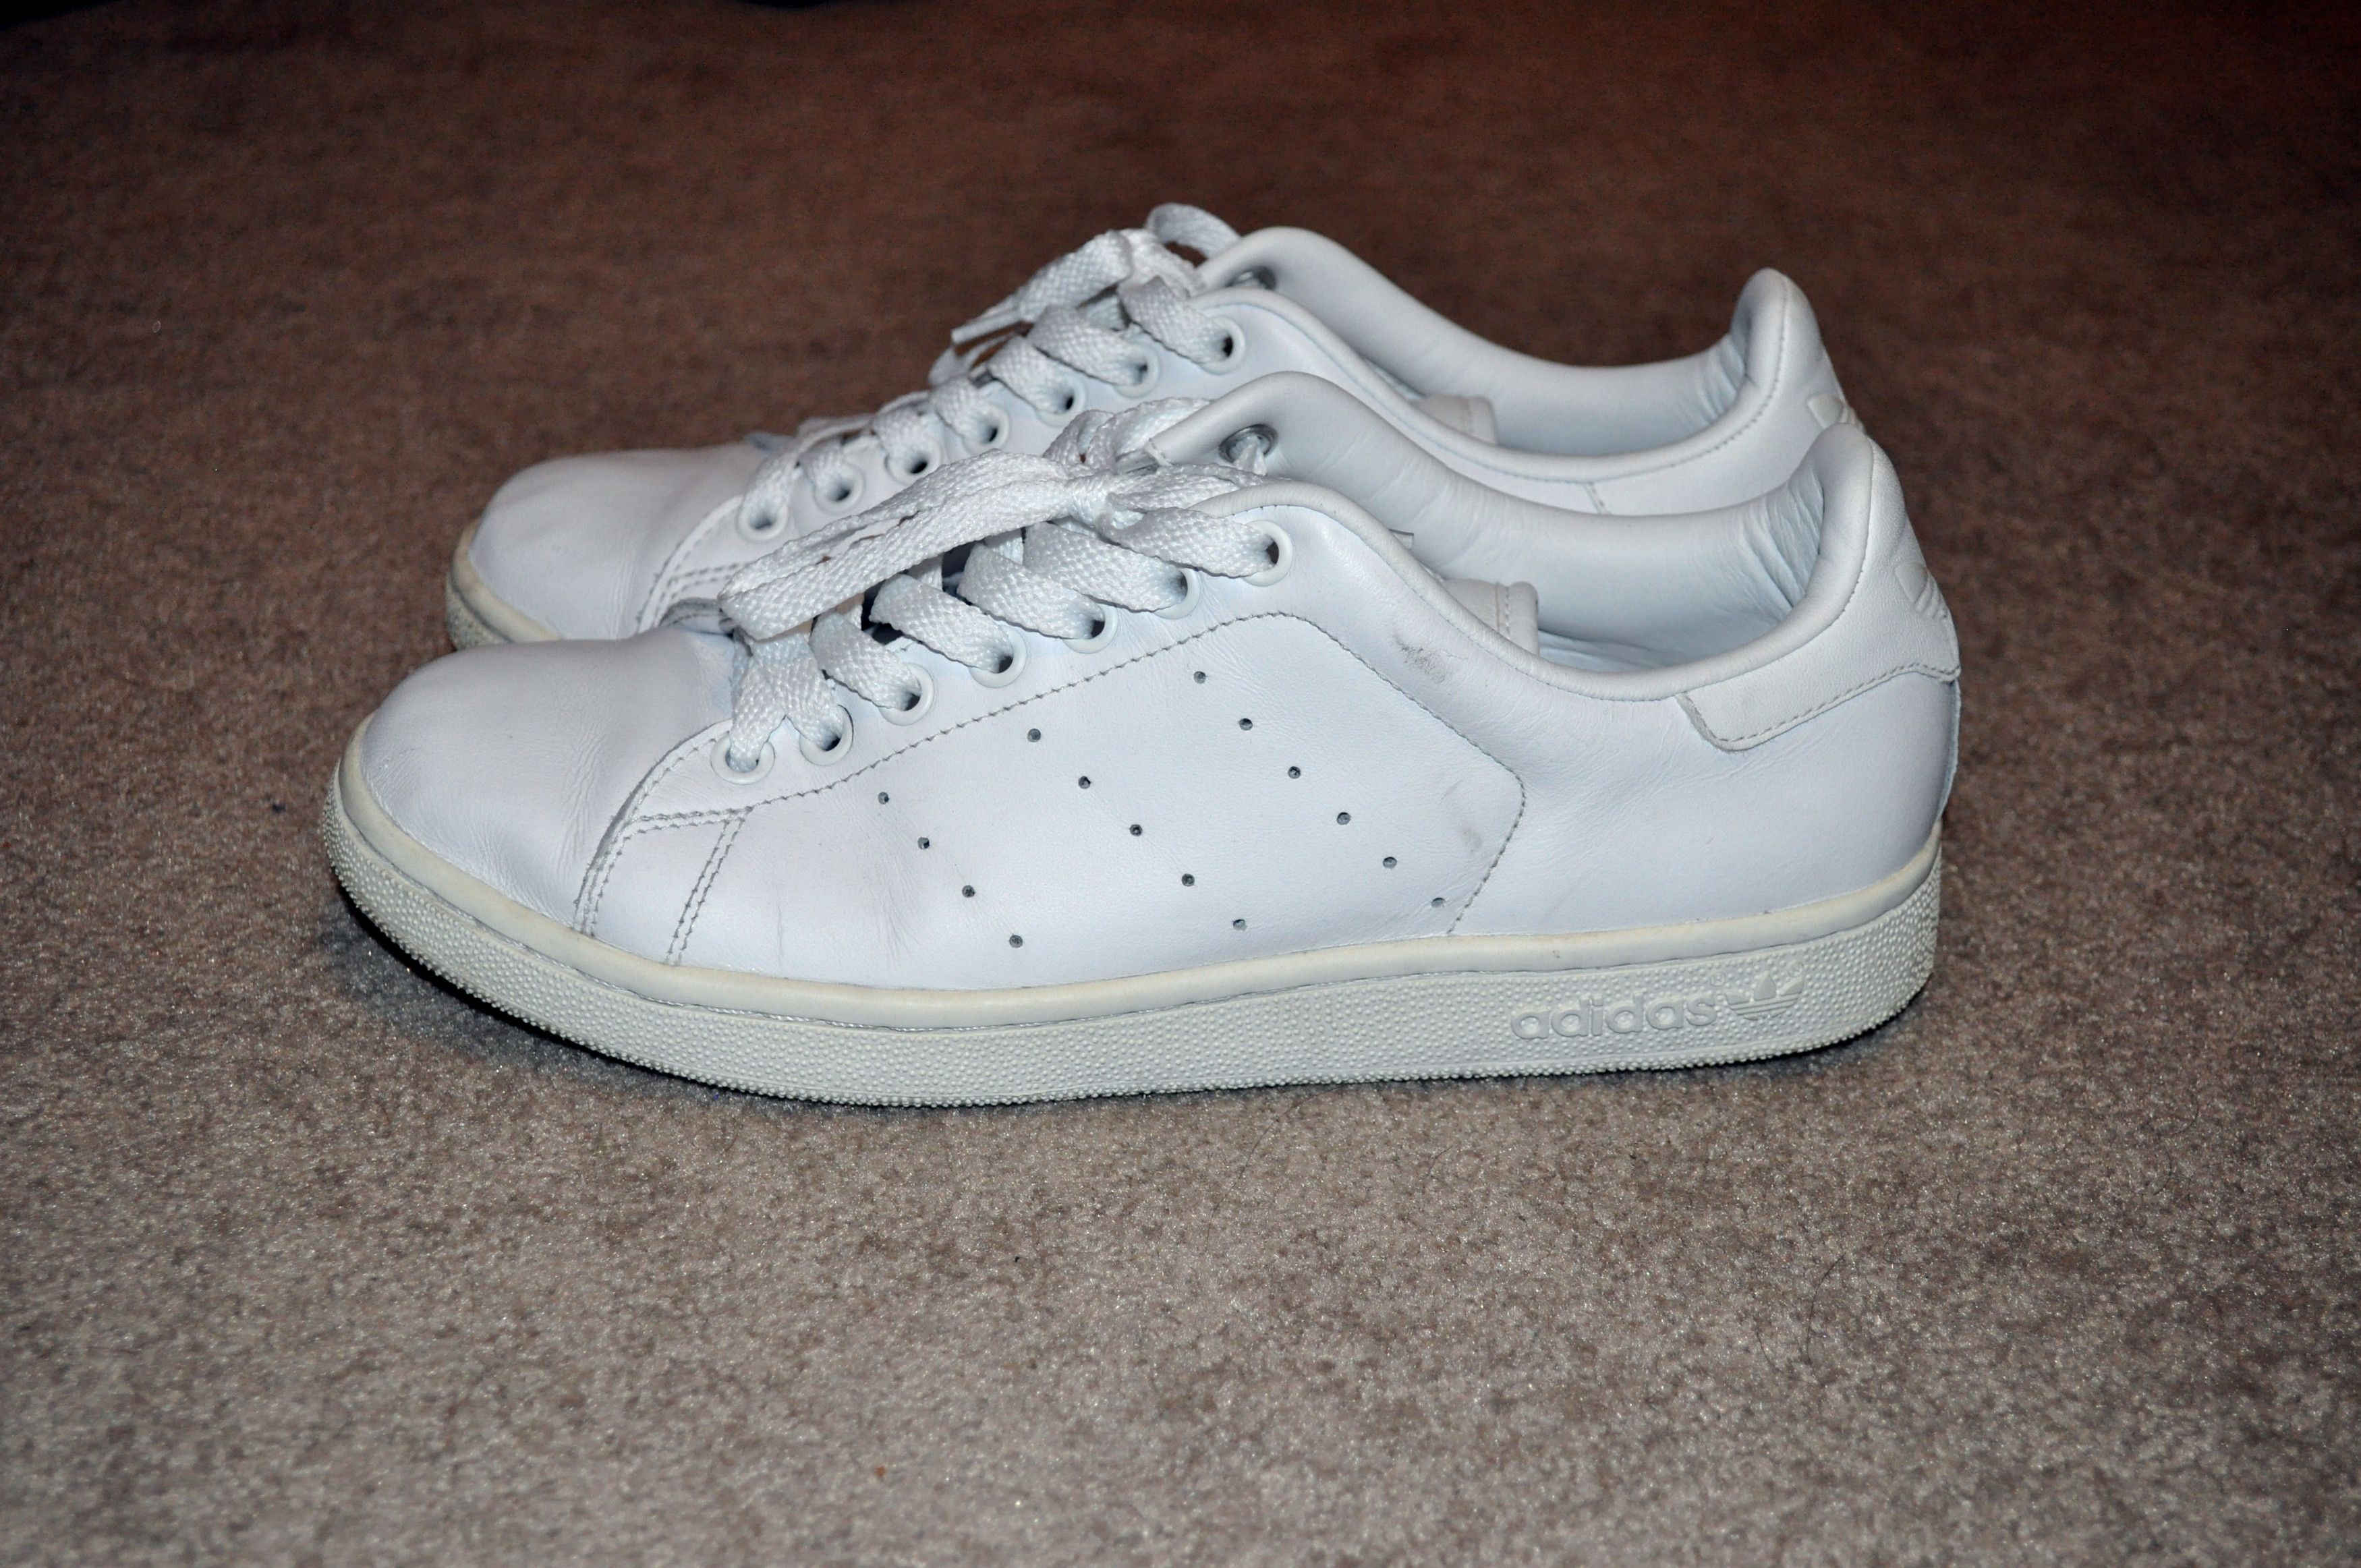 Adidas Stan Smith White/White Size US 8 / EU 41 - 3 Thumbnail